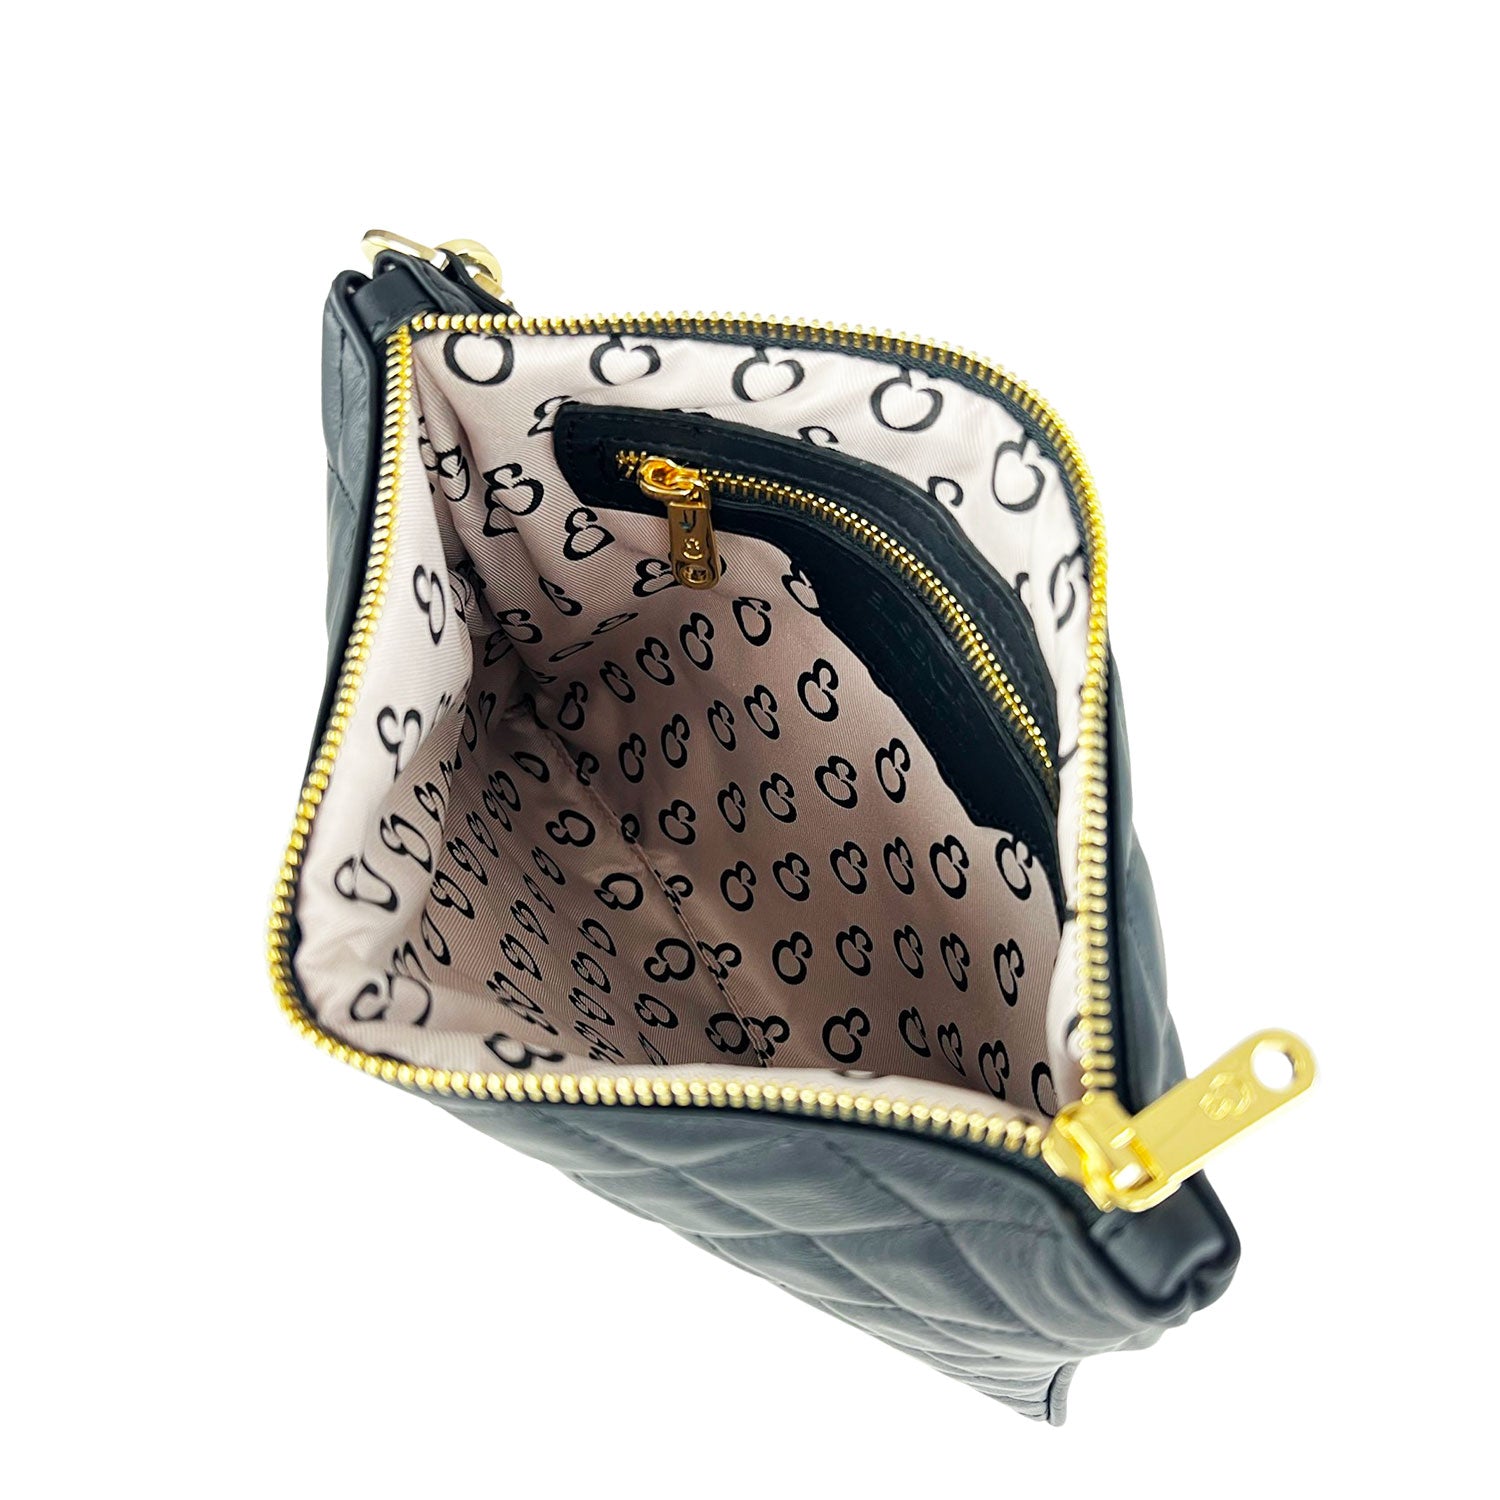 Grazia Tiffany – Pochette – Matelassé leather